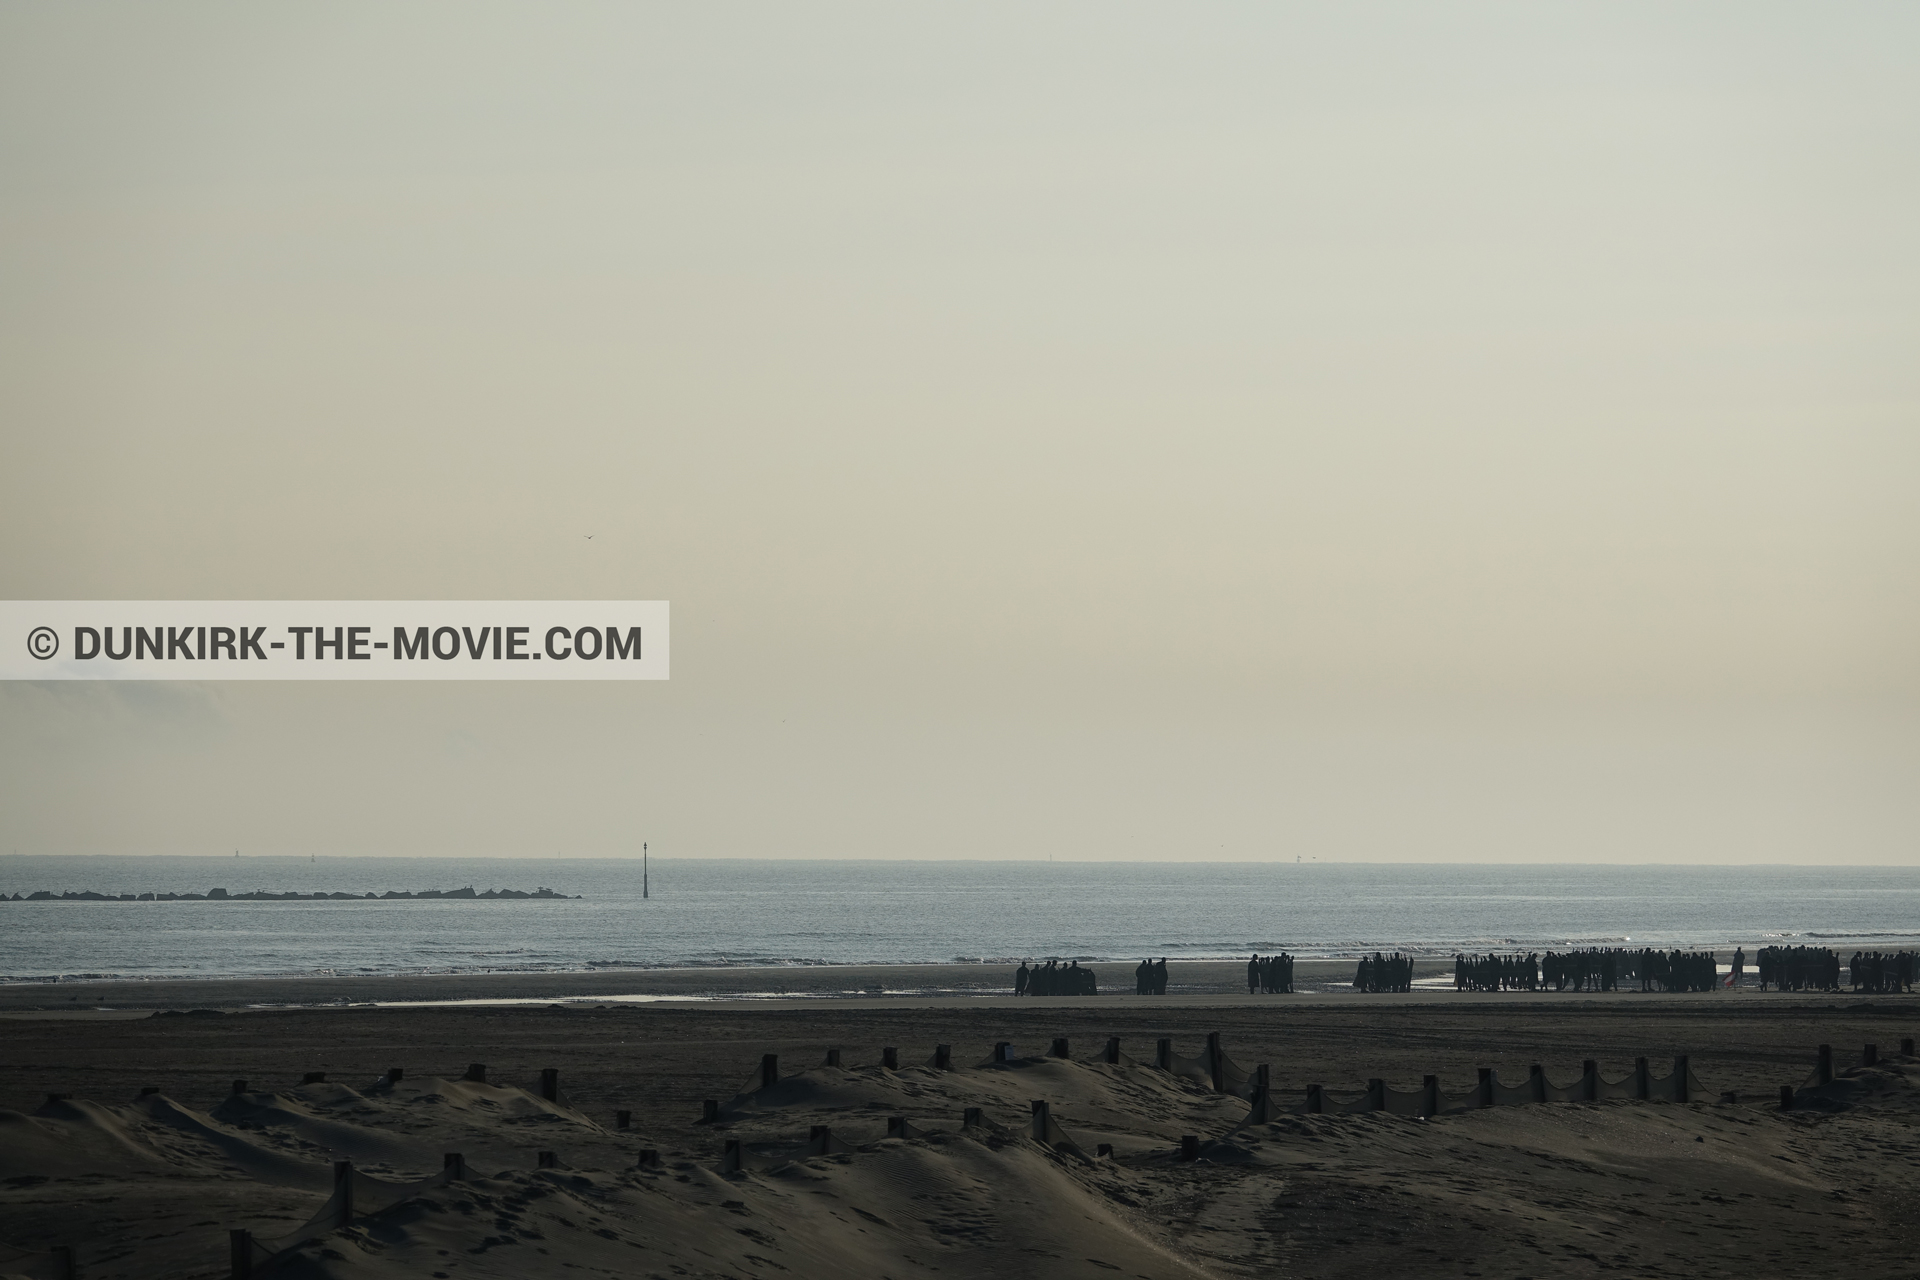 Fotos con cielo anaranjado, extras, playa,  durante el rodaje de la película Dunkerque de Nolan